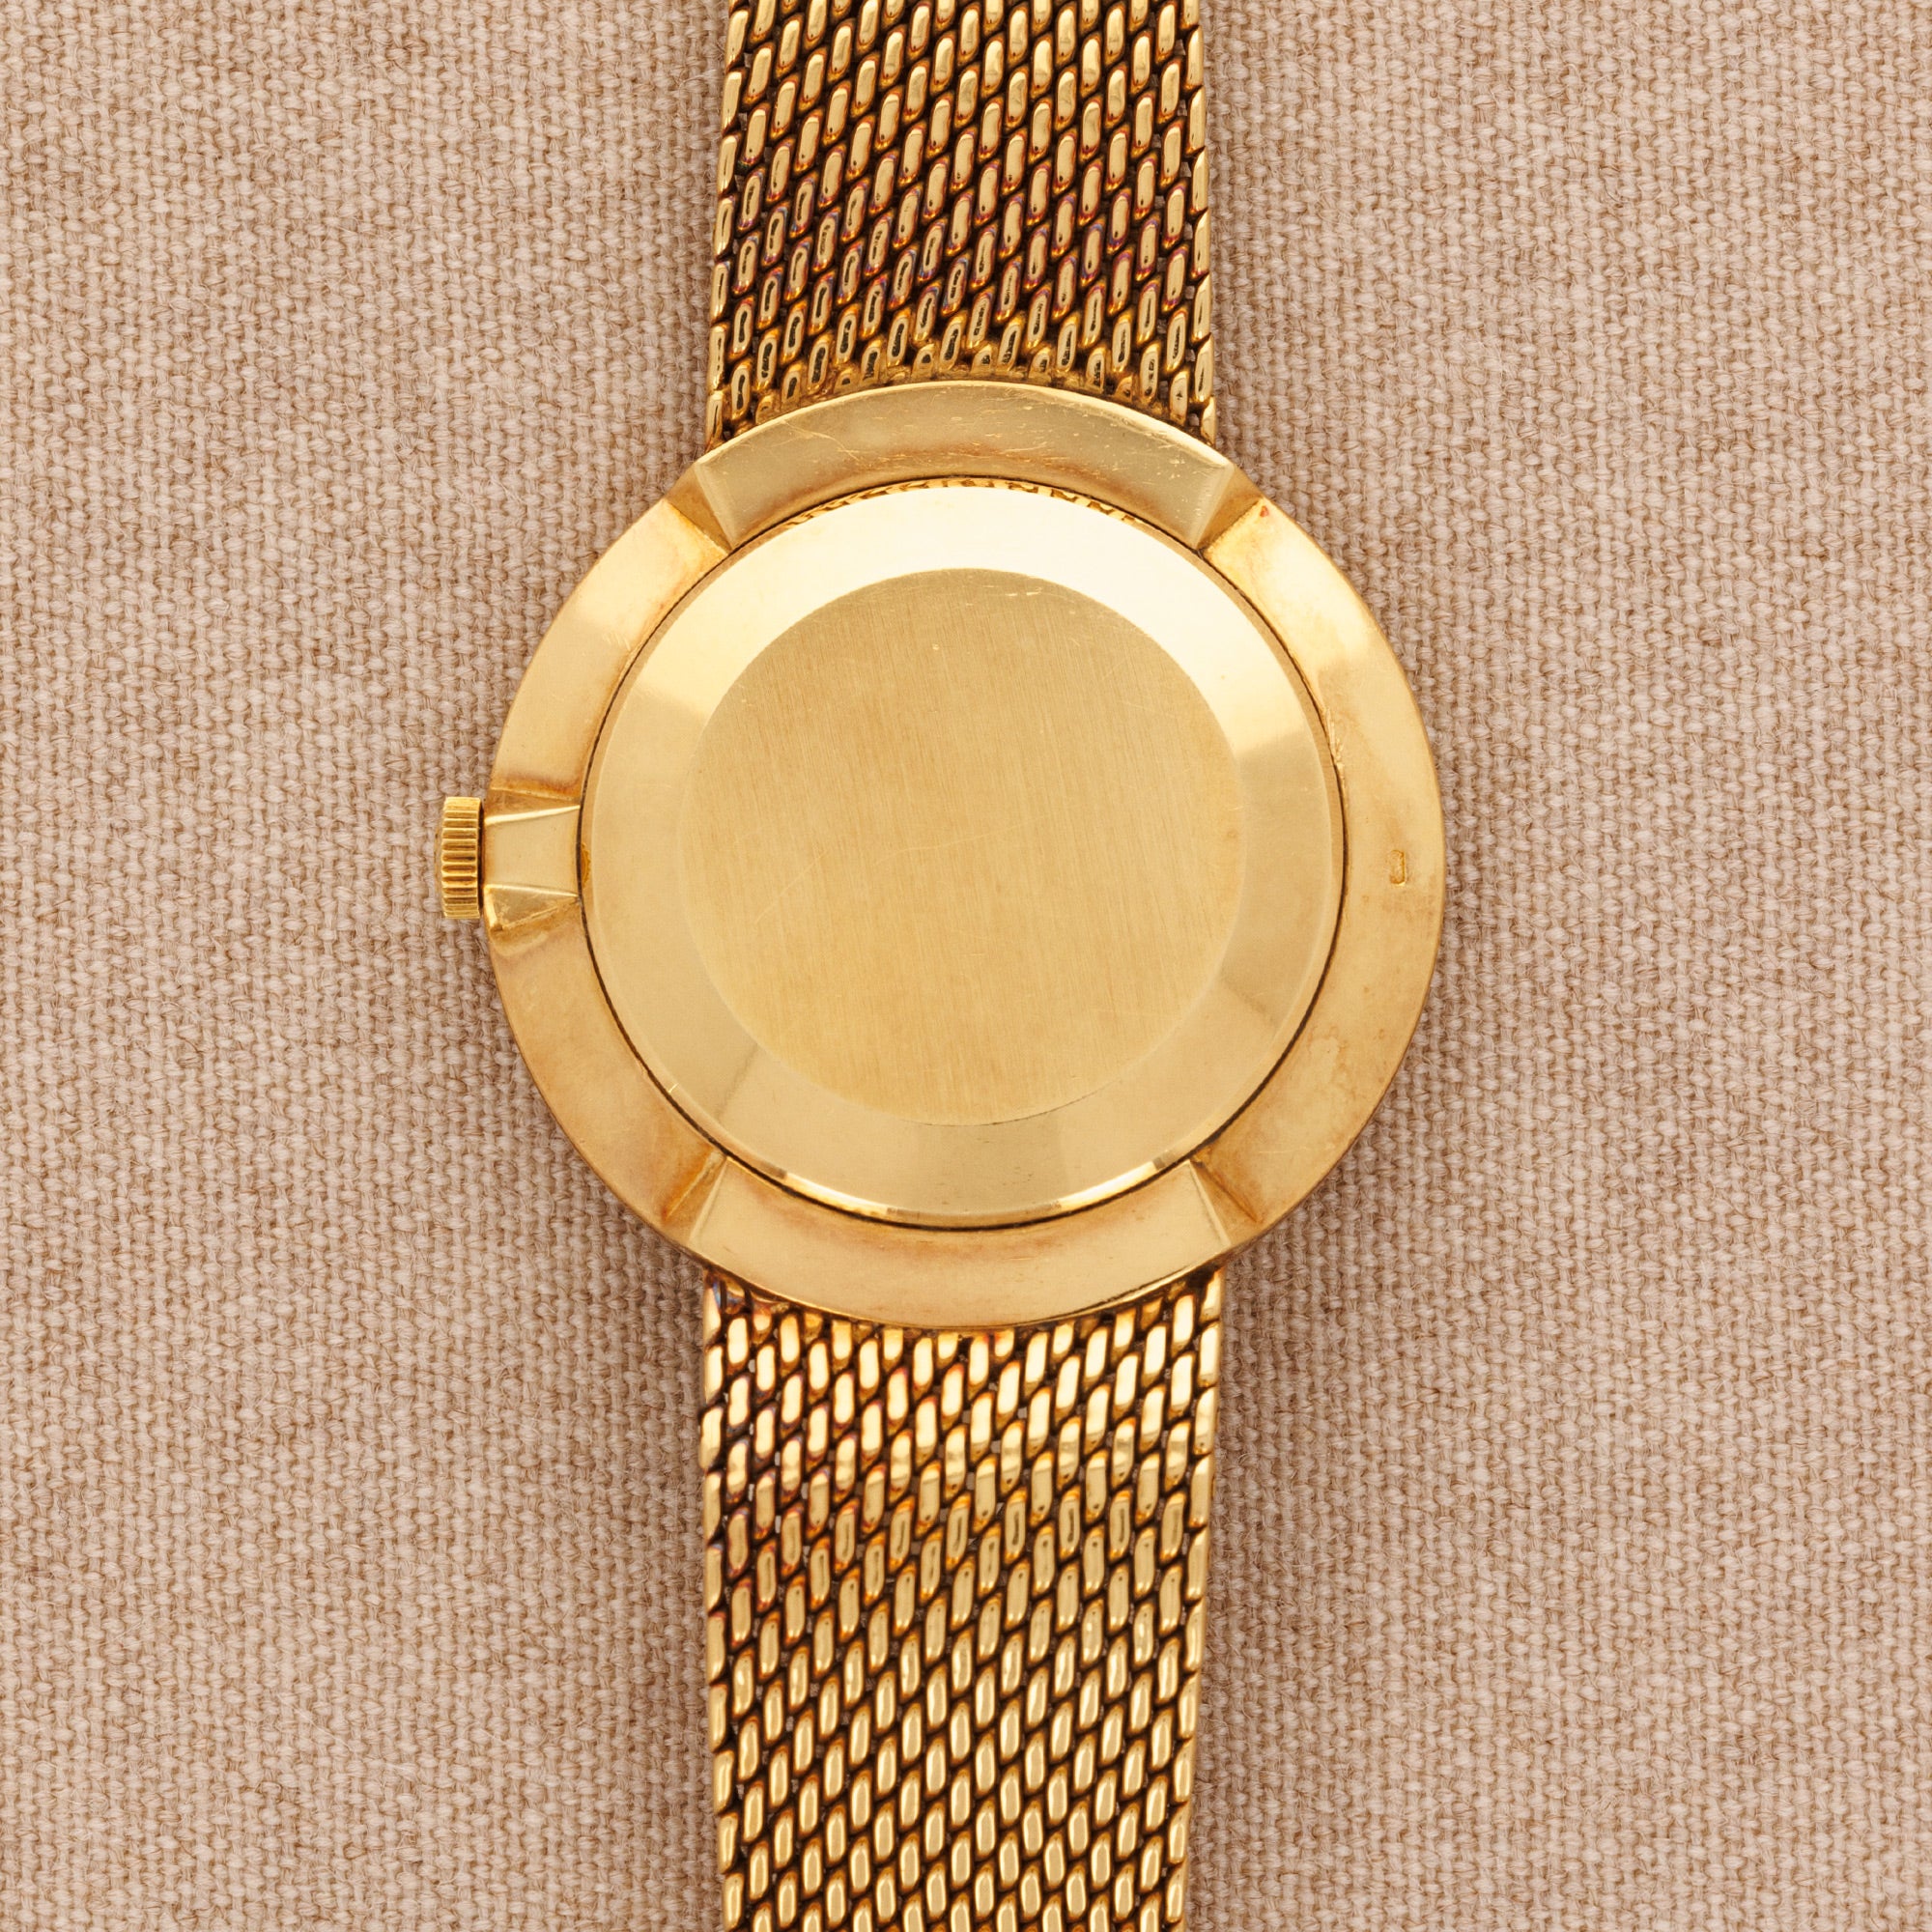 Patek Philippe - Patek Philippe Yellow Gold Calatrava Ref. 3562 - The Keystone Watches